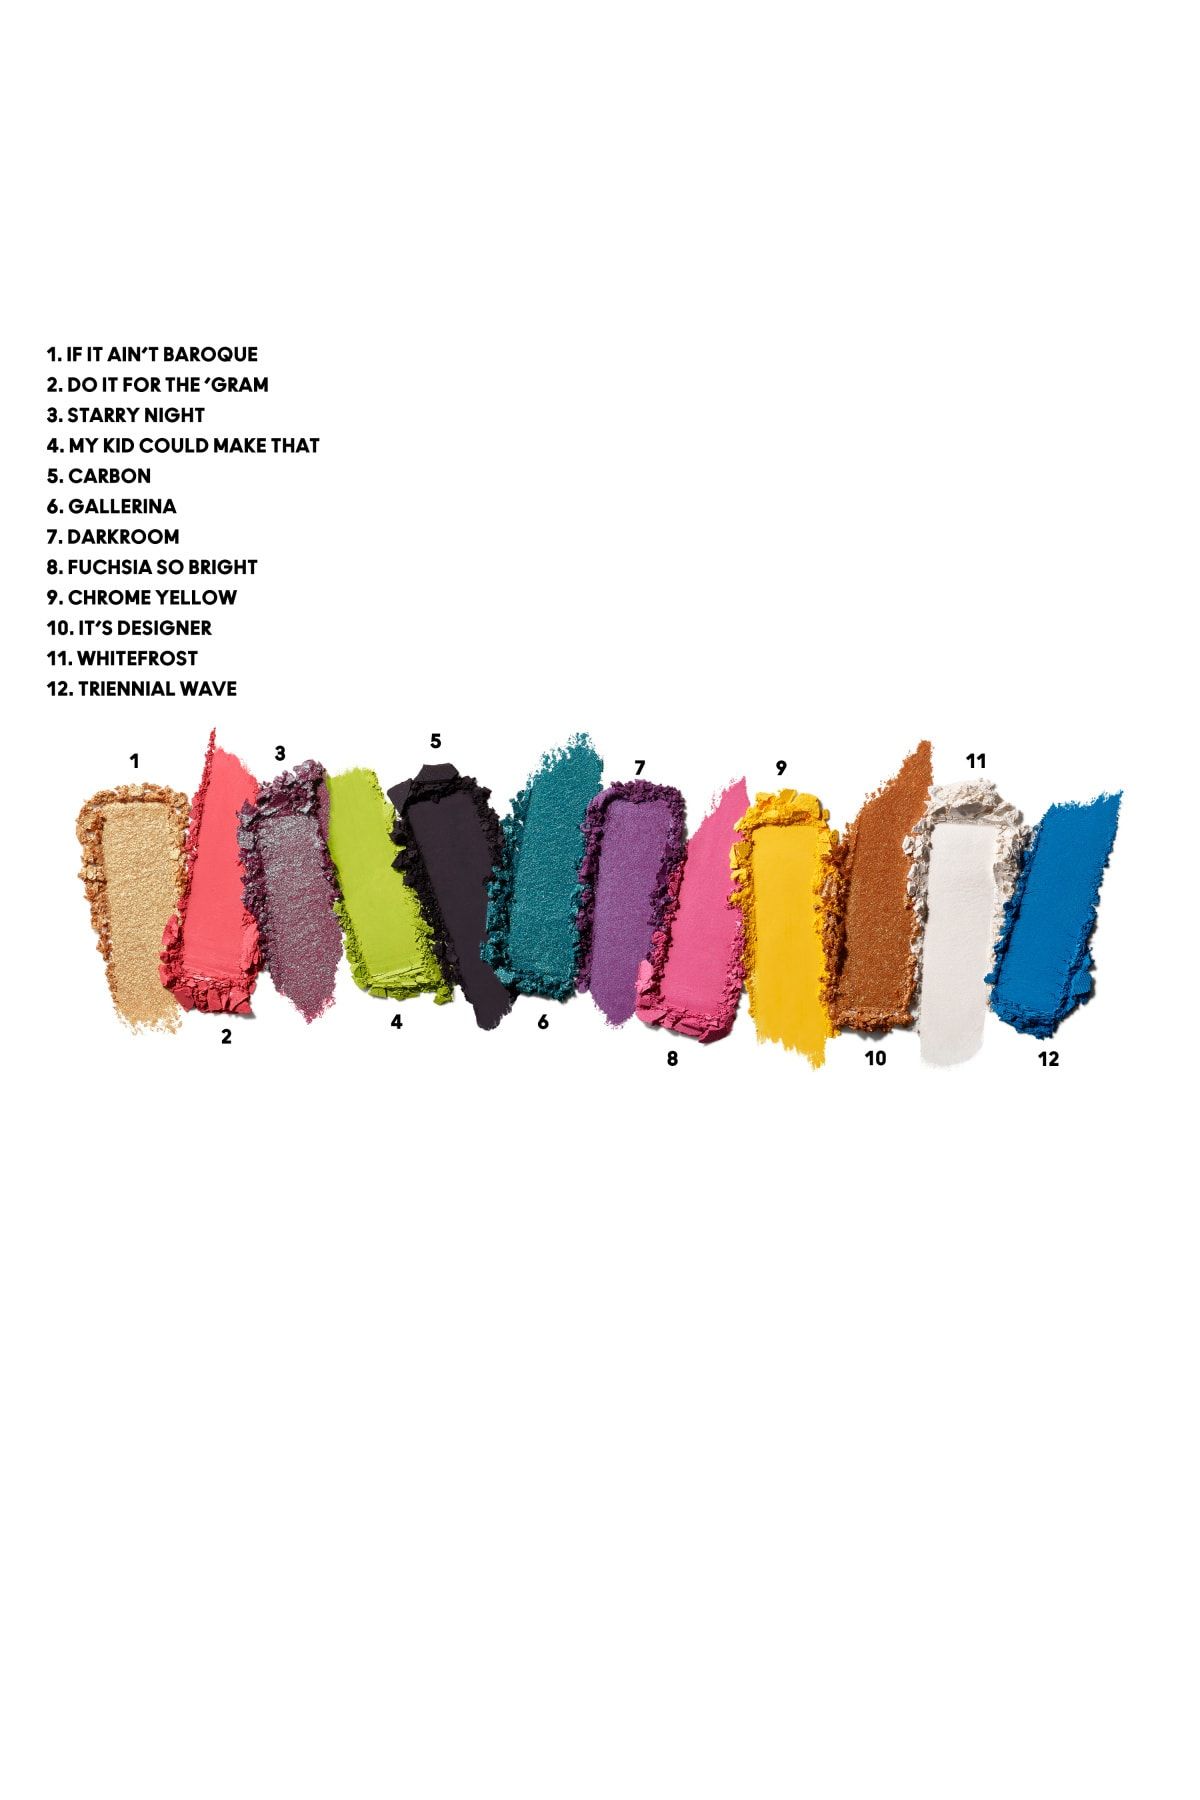 Mac پالت سایه چشم Hi-Fi Colour جلوه ای خیره کننده با رنگ های شاد